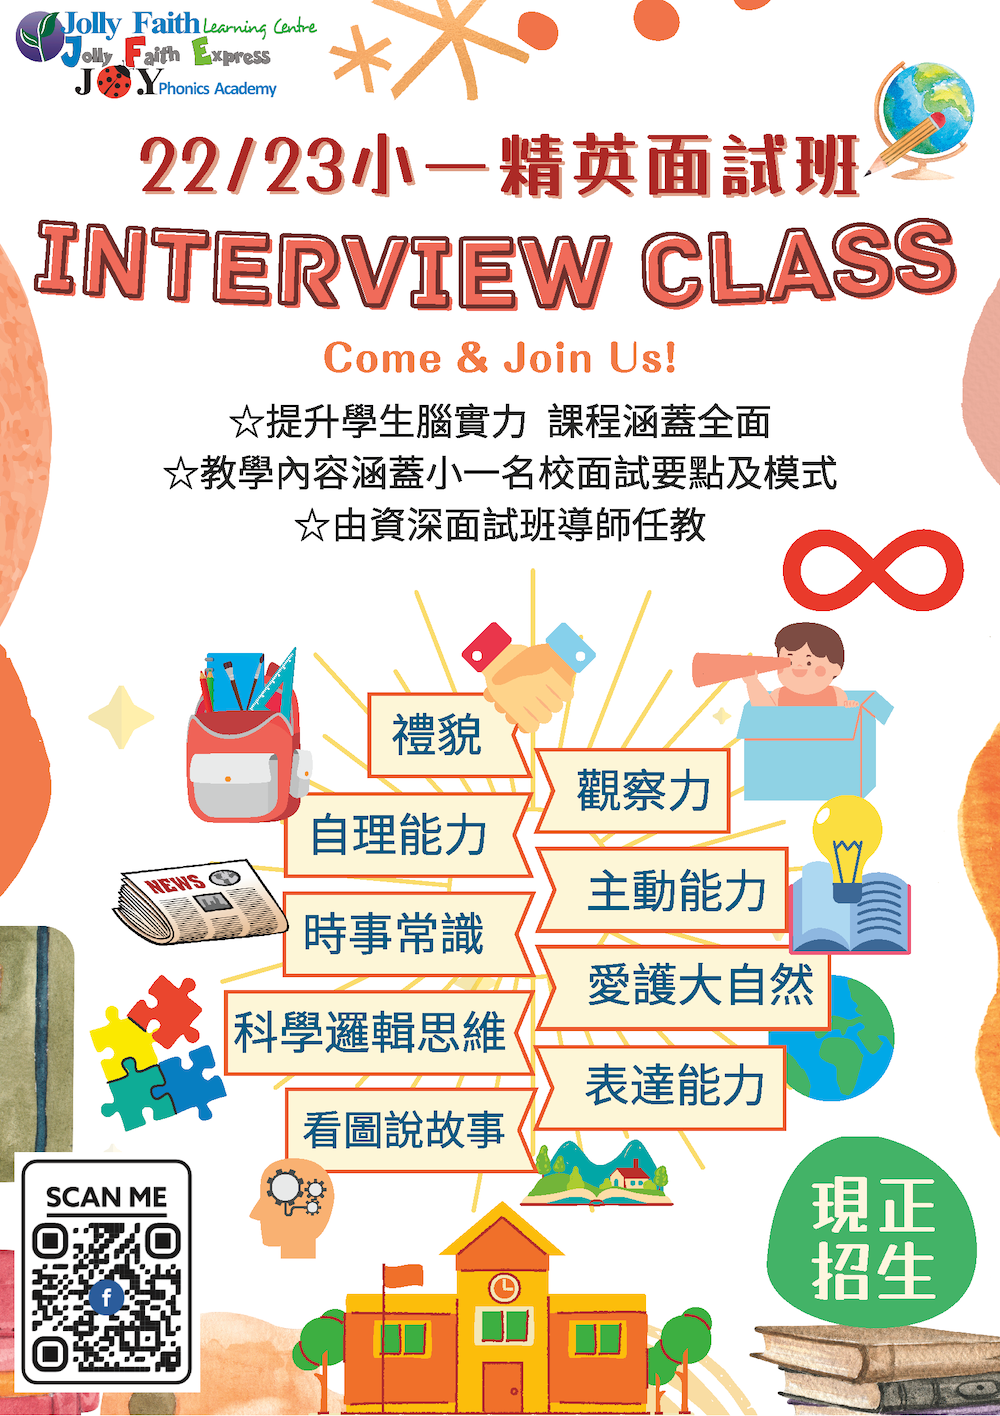 Interview Class